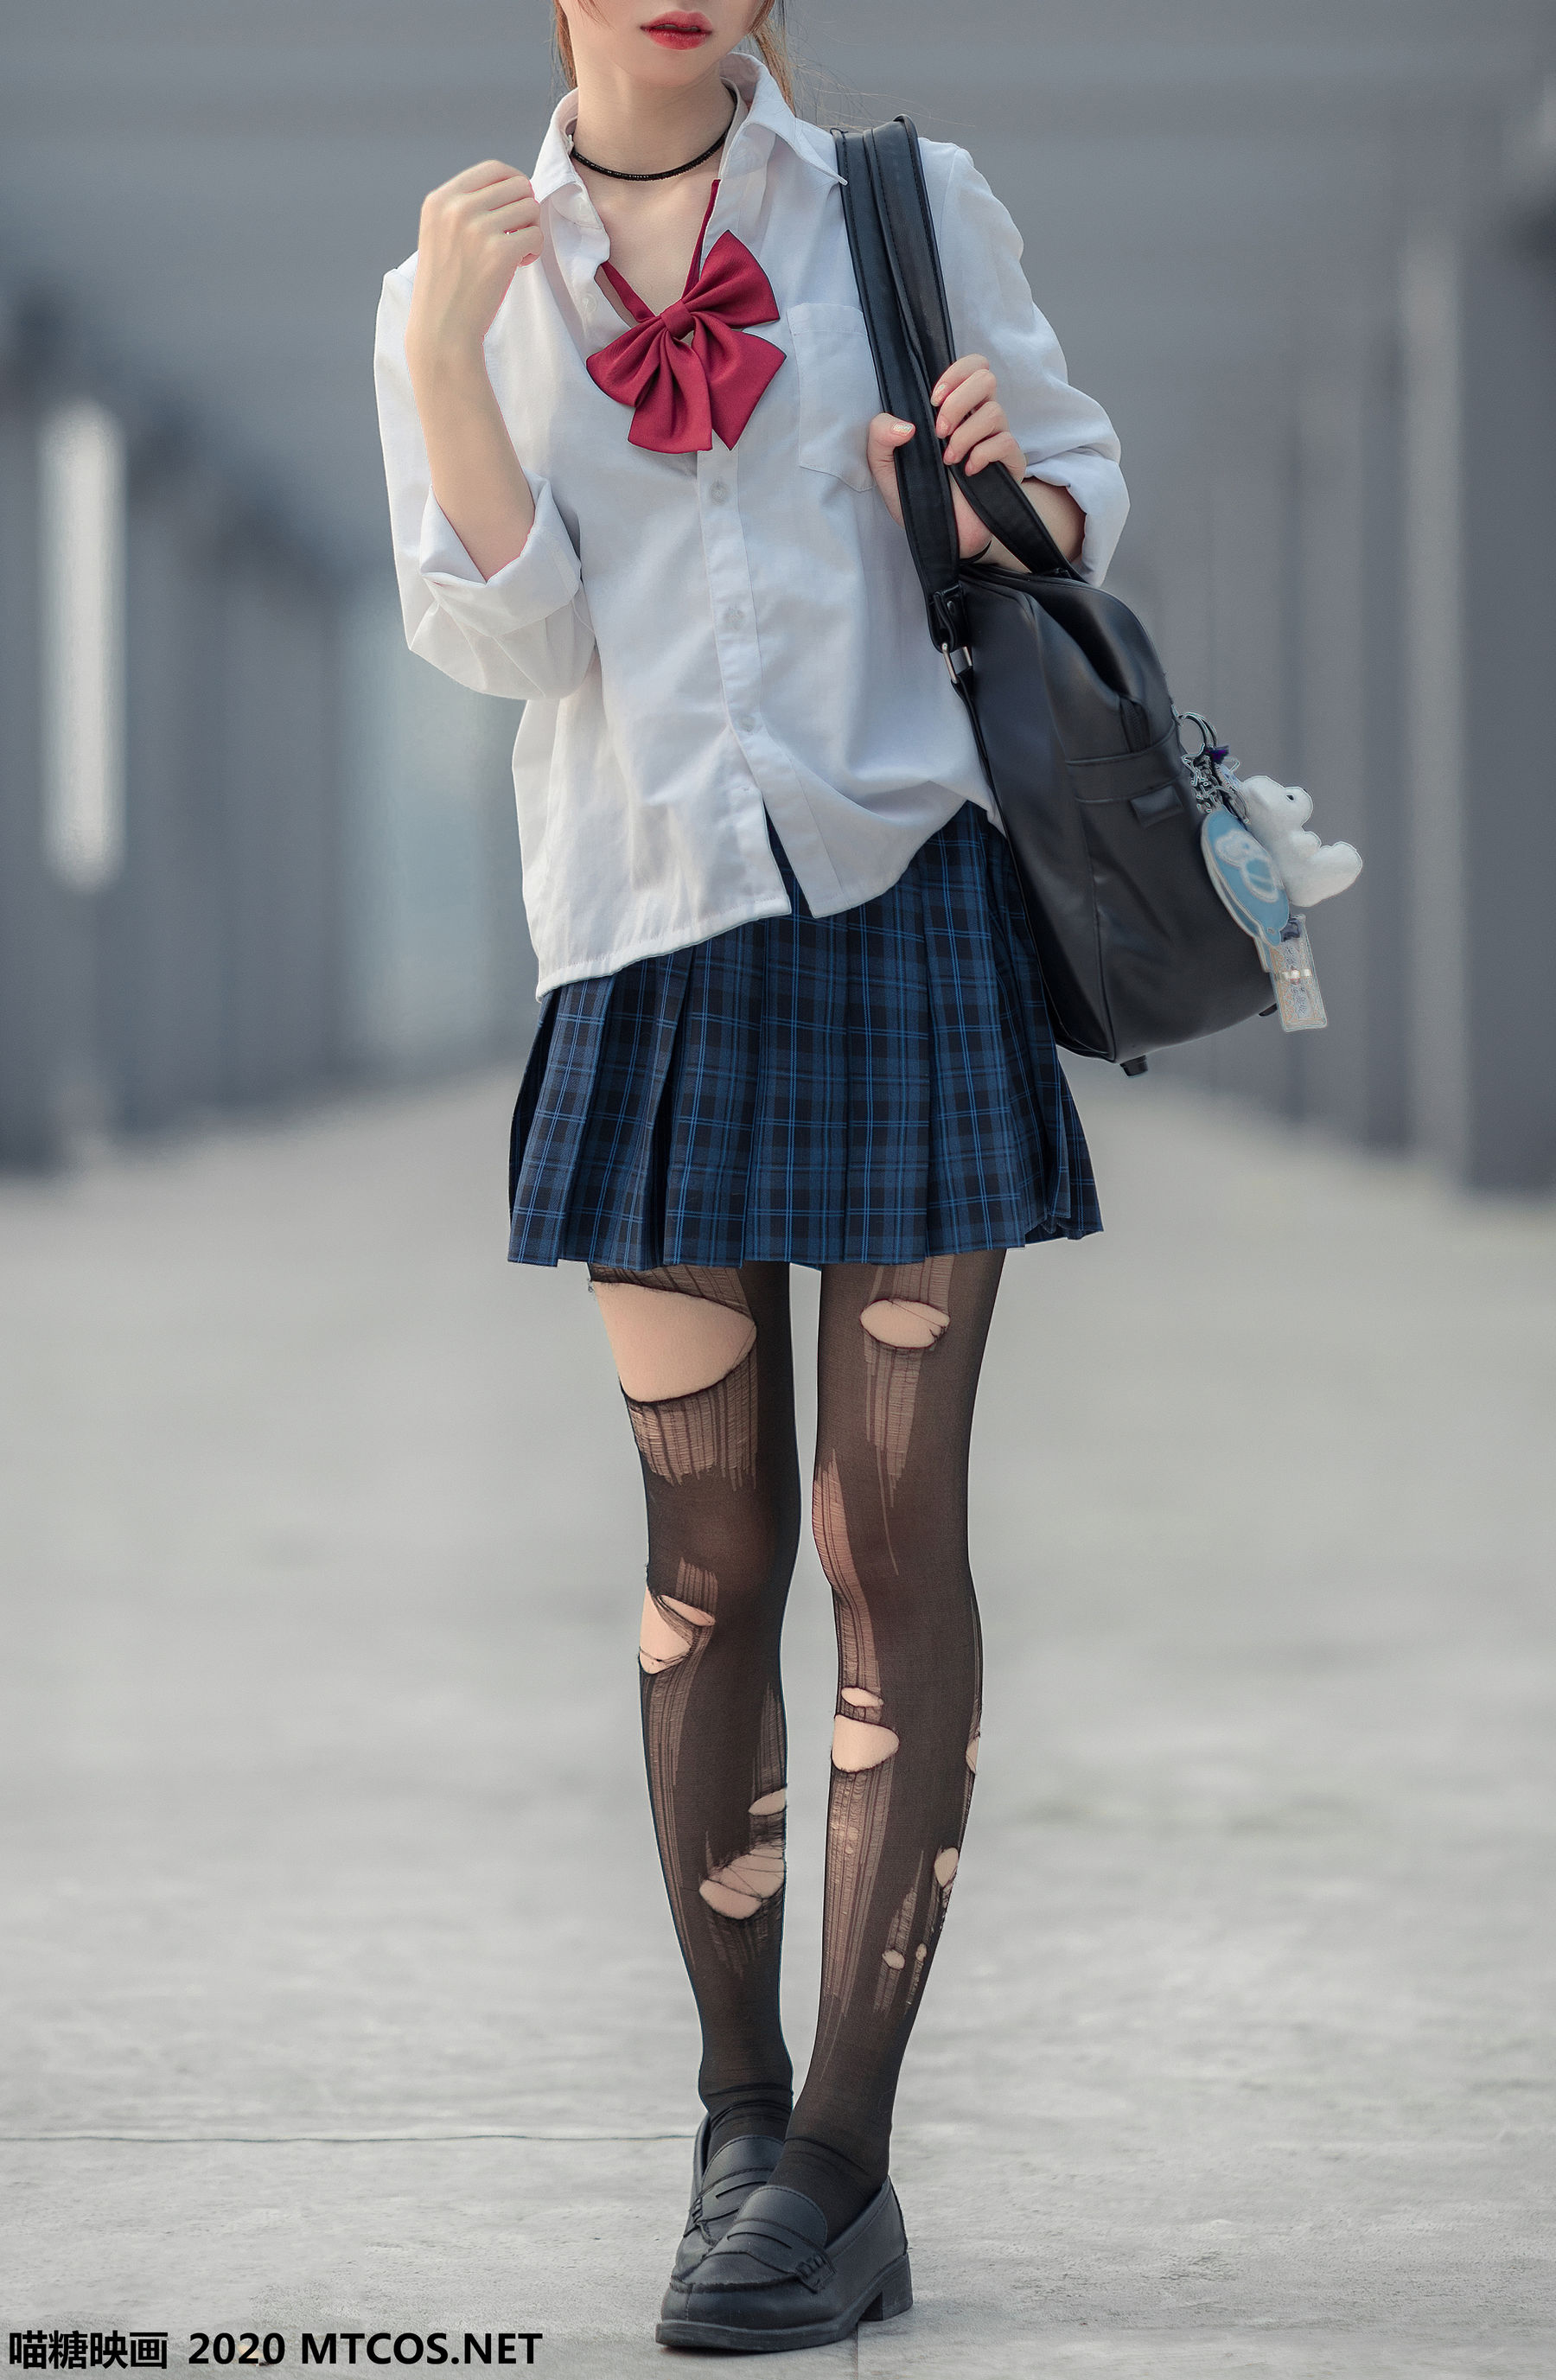 JK uniform girl [糖] Vol.098 photo set